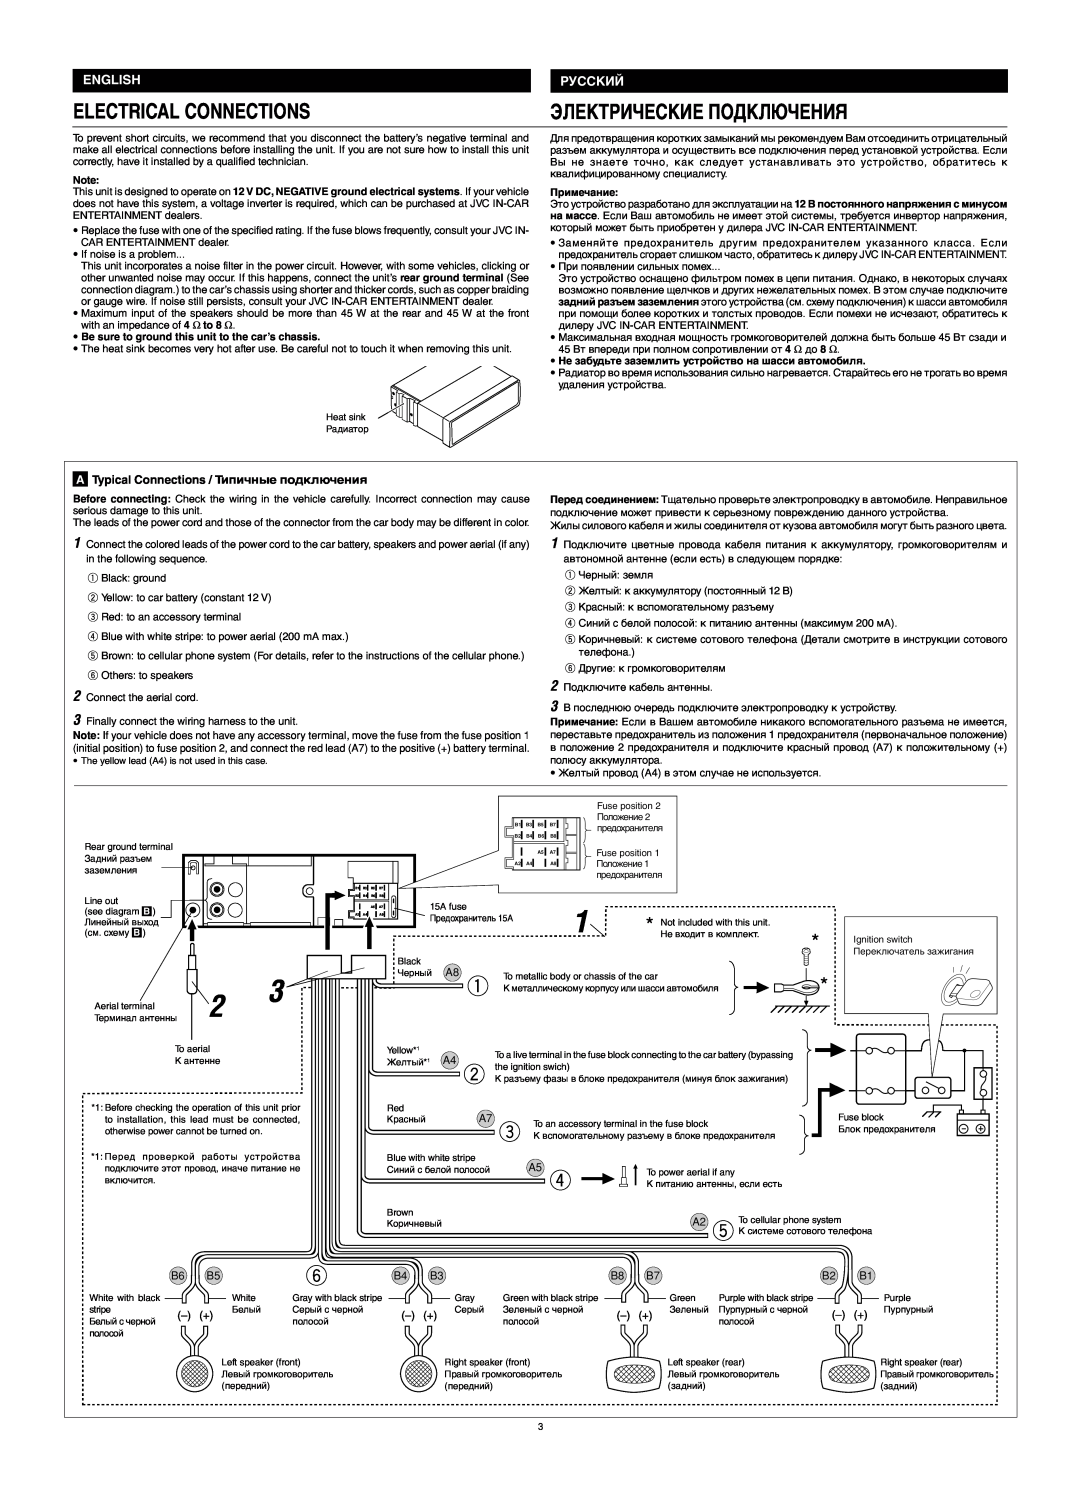 JVC KS-F545 manual Electrical Connections, Электрические Подключения, English 